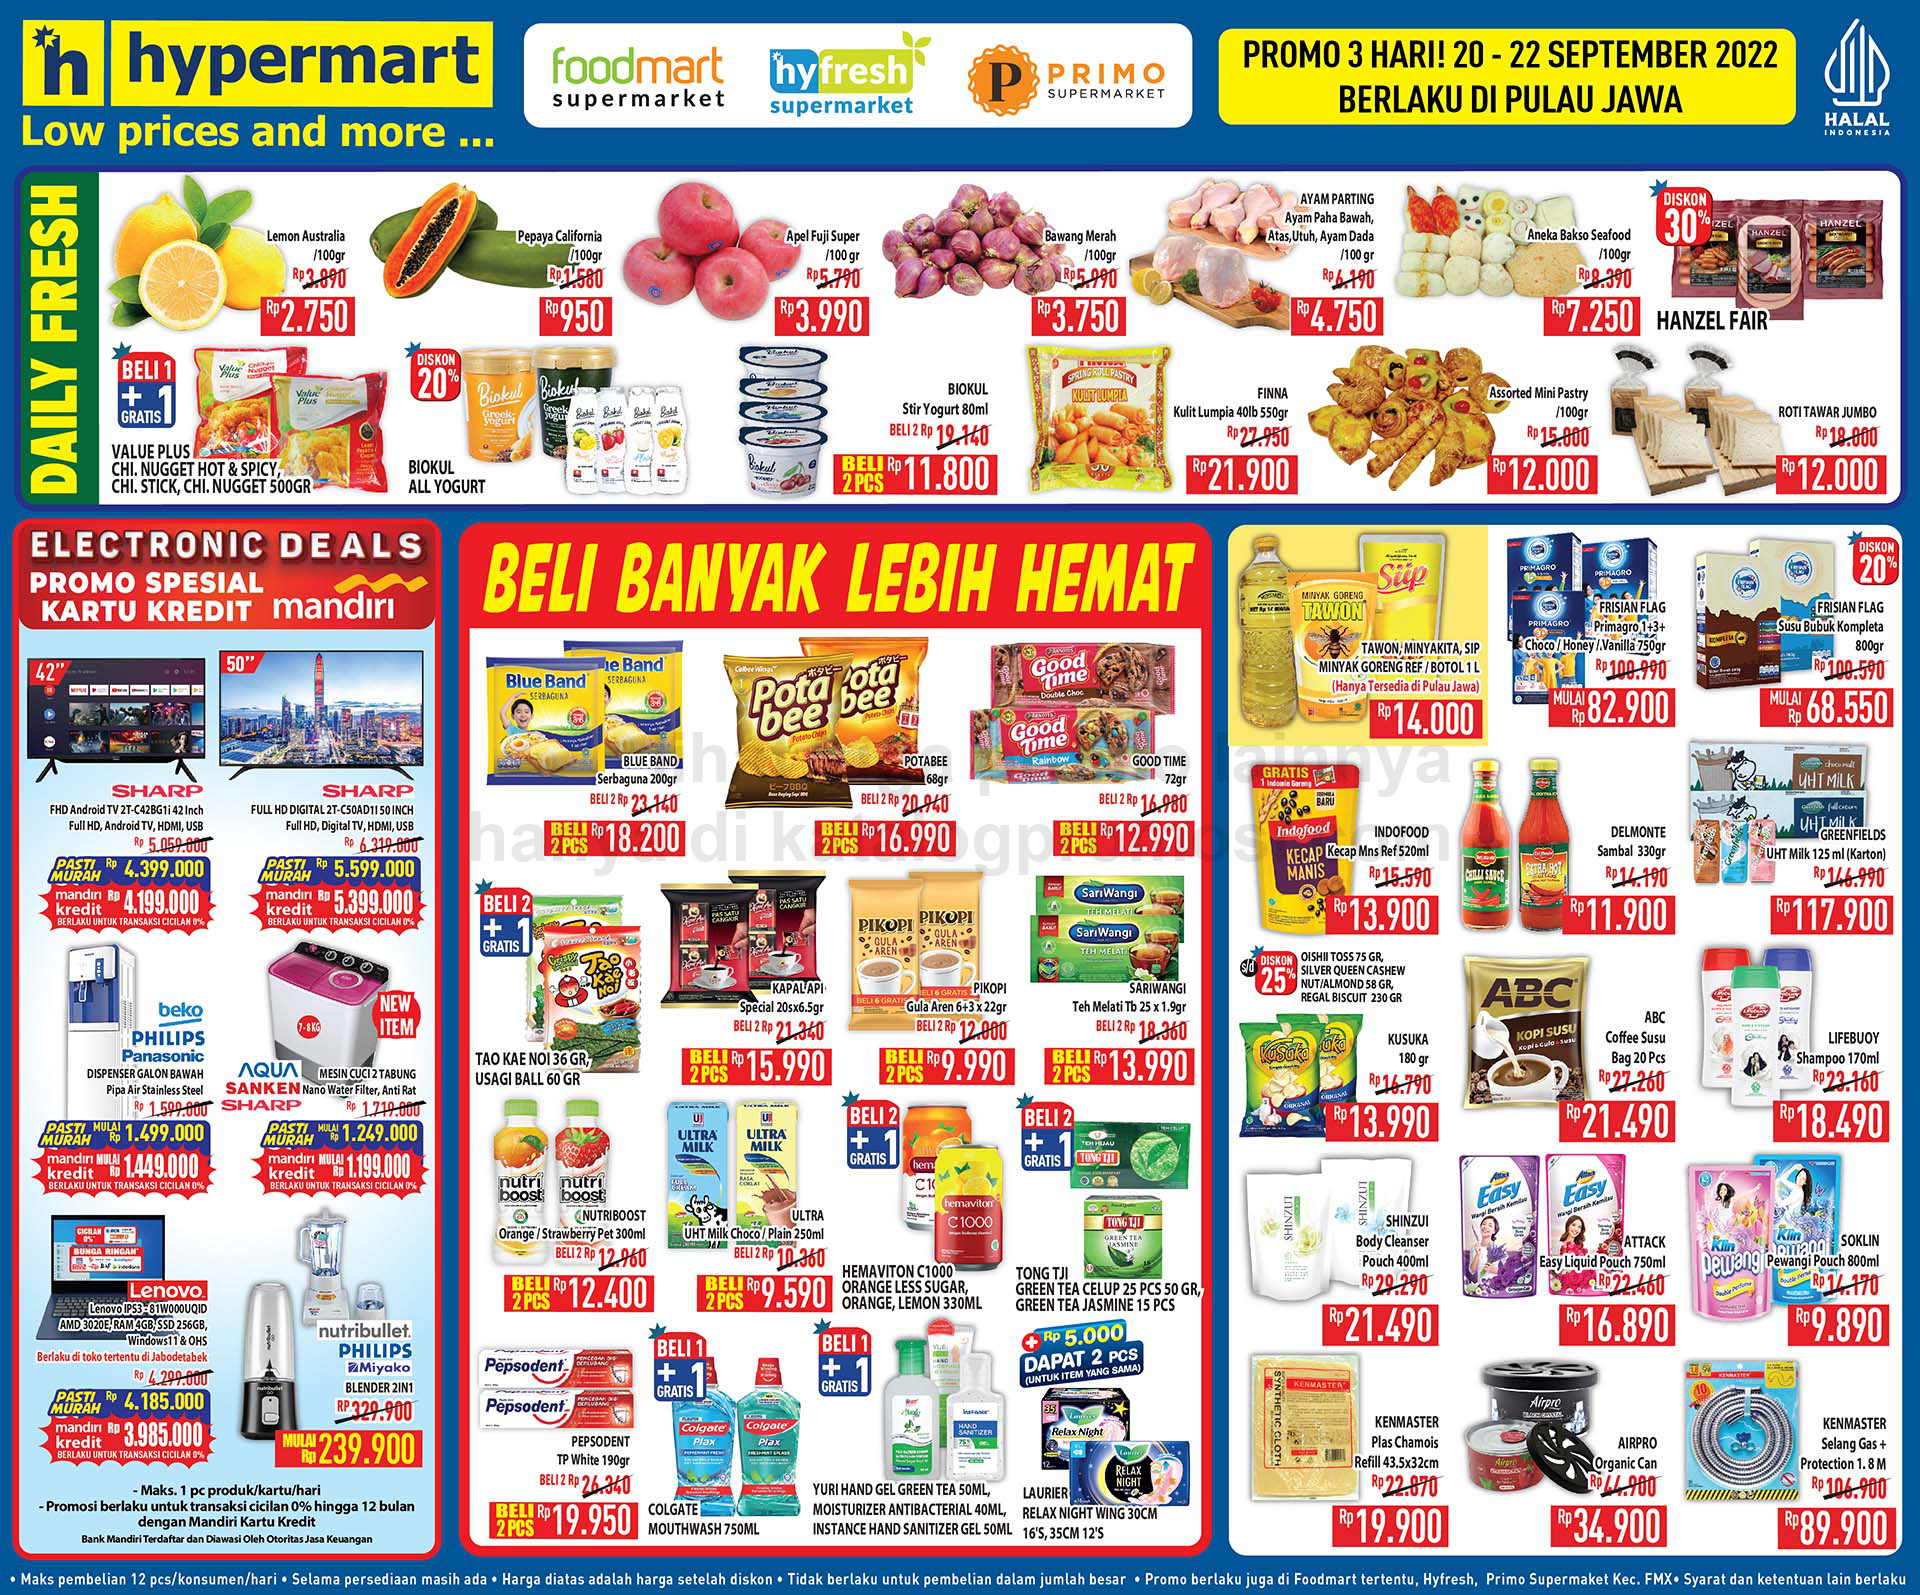 Katalog Hypermart Promo Weekday periode 20-22 September 2022